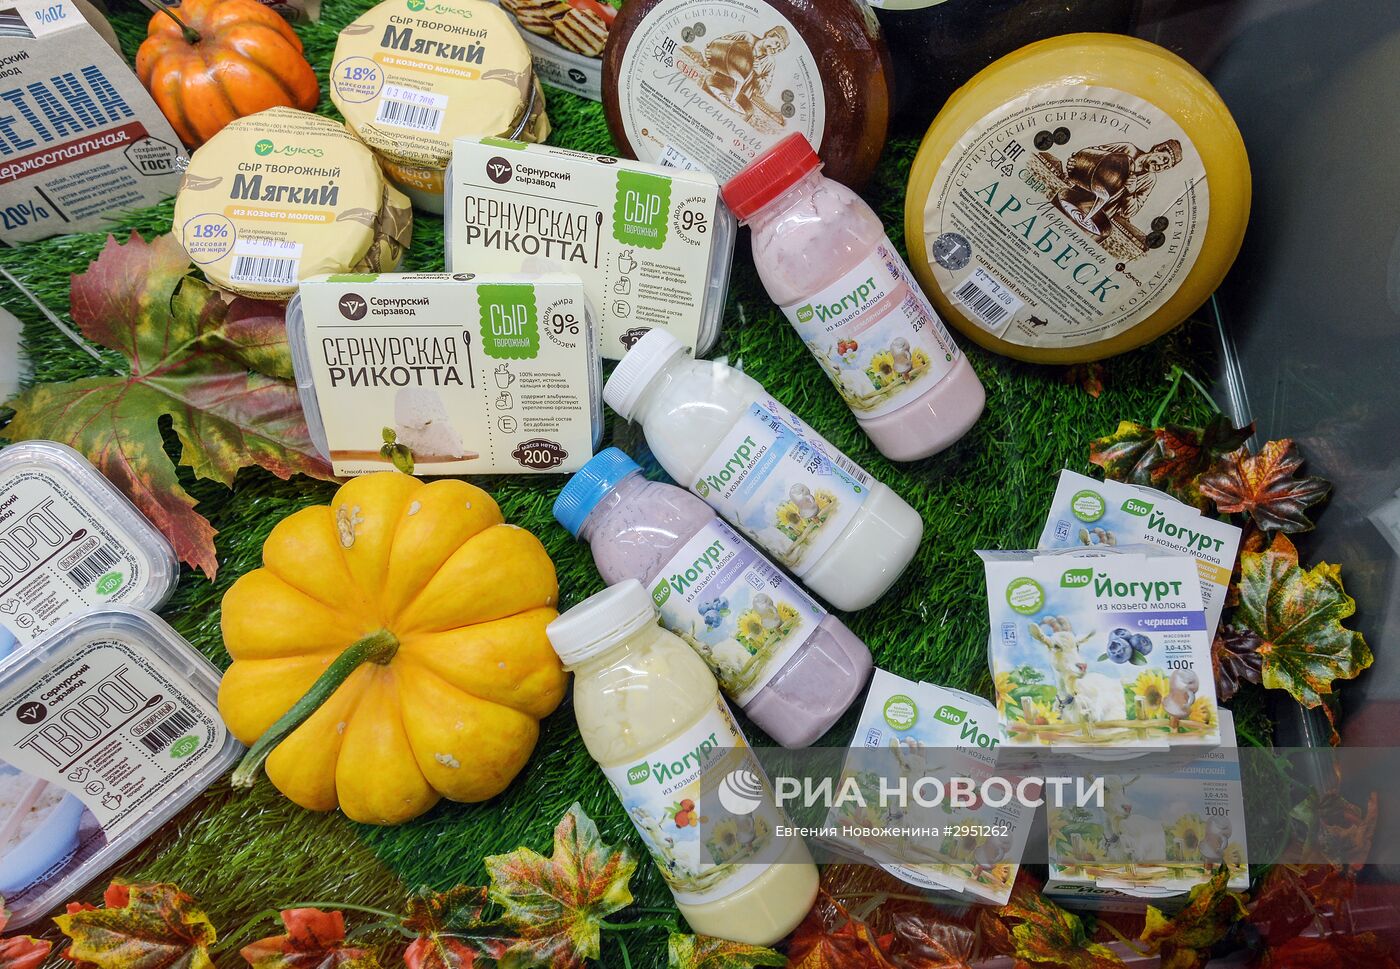 18-я Российская агропромышленная выставка "Золотая осень"